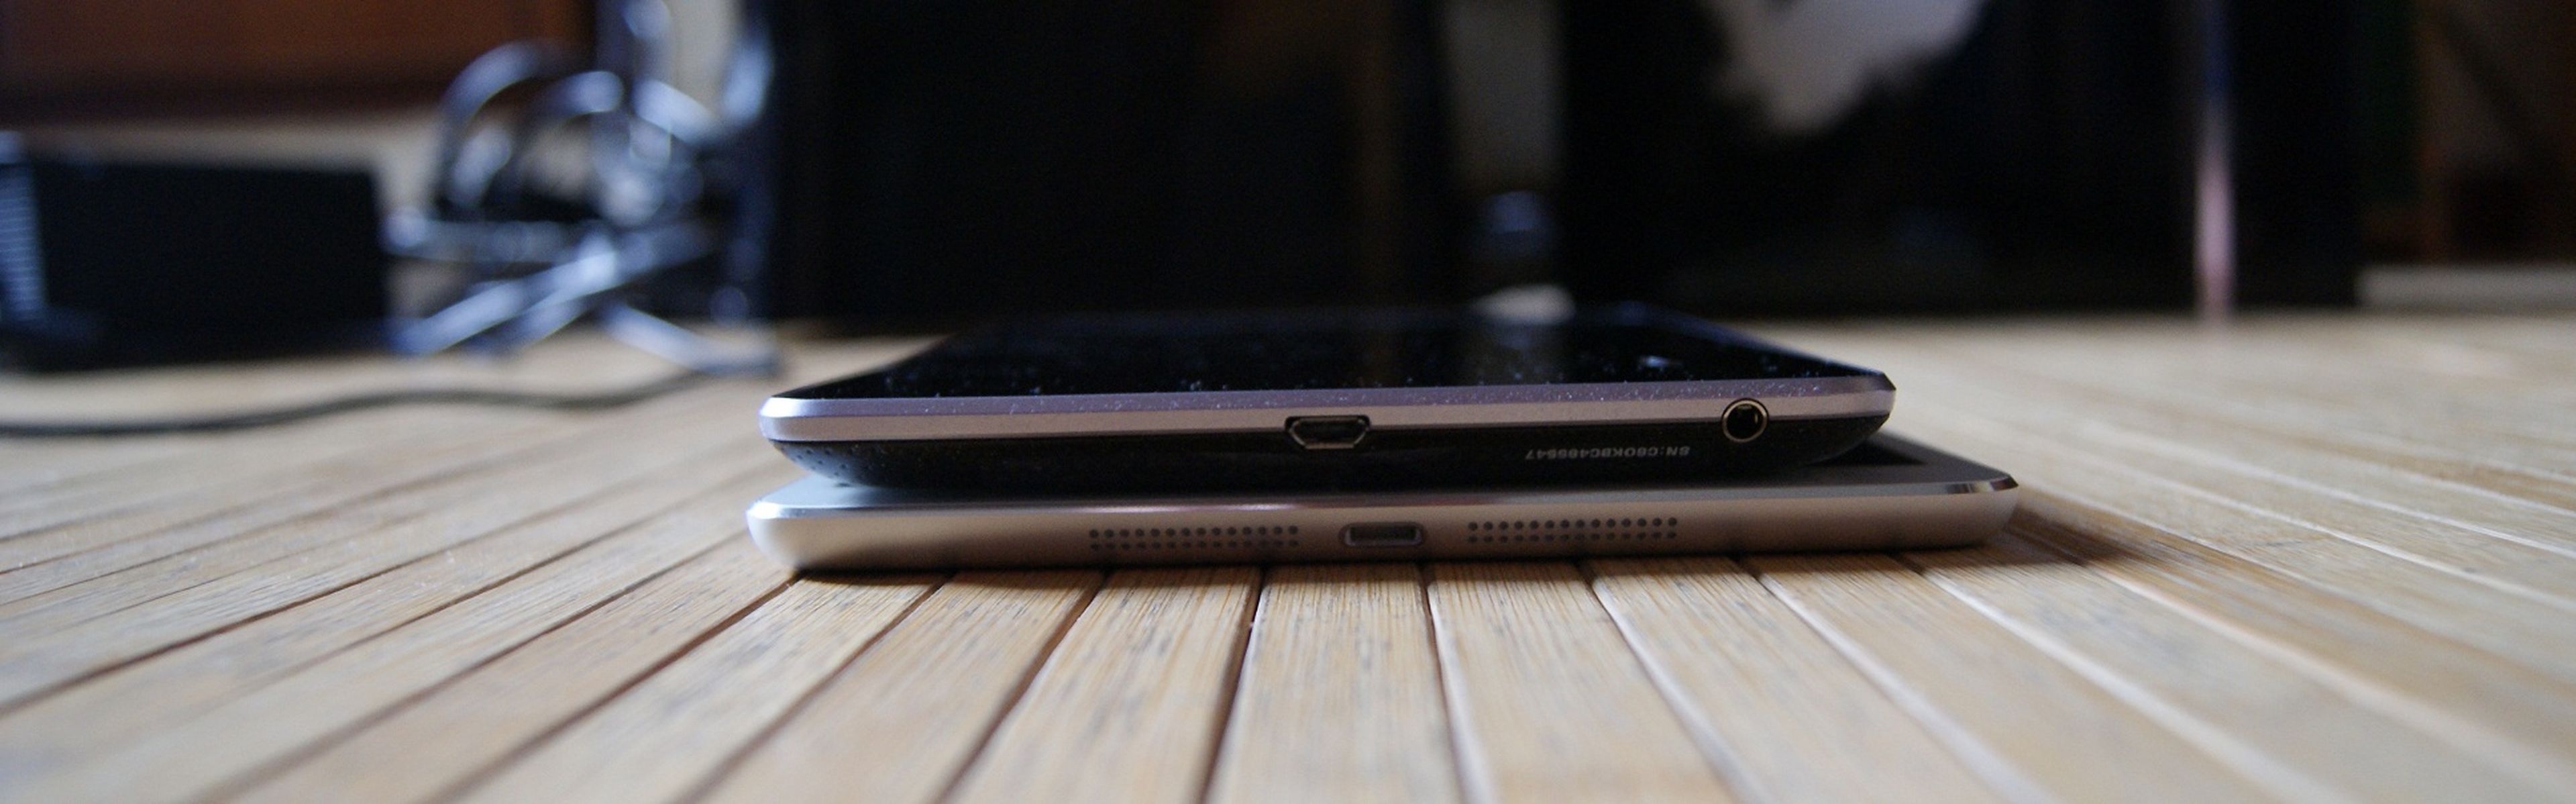 iPad mini vs. Nexus 7, duelo de minitablets